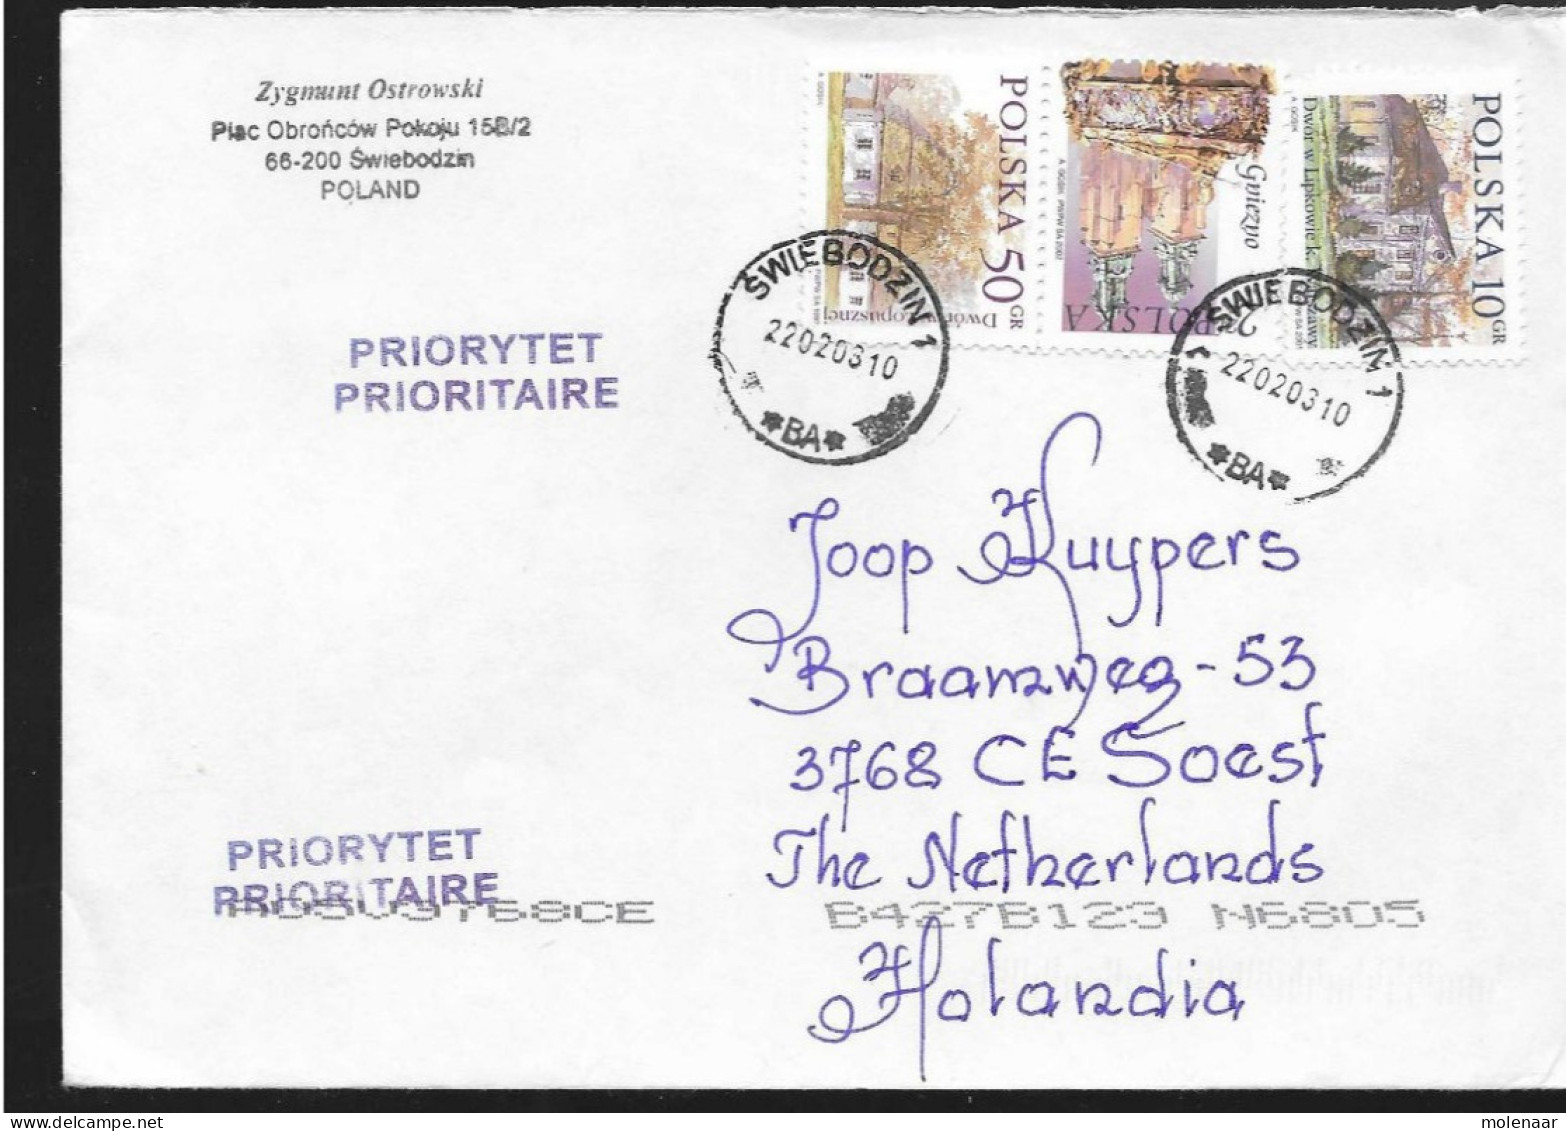 Postzegels > Europa > Polen > 1944-.... Republiek > 2001-10 >brief Ui 2003 Met 3 Postzegels (17119)17118 - Covers & Documents